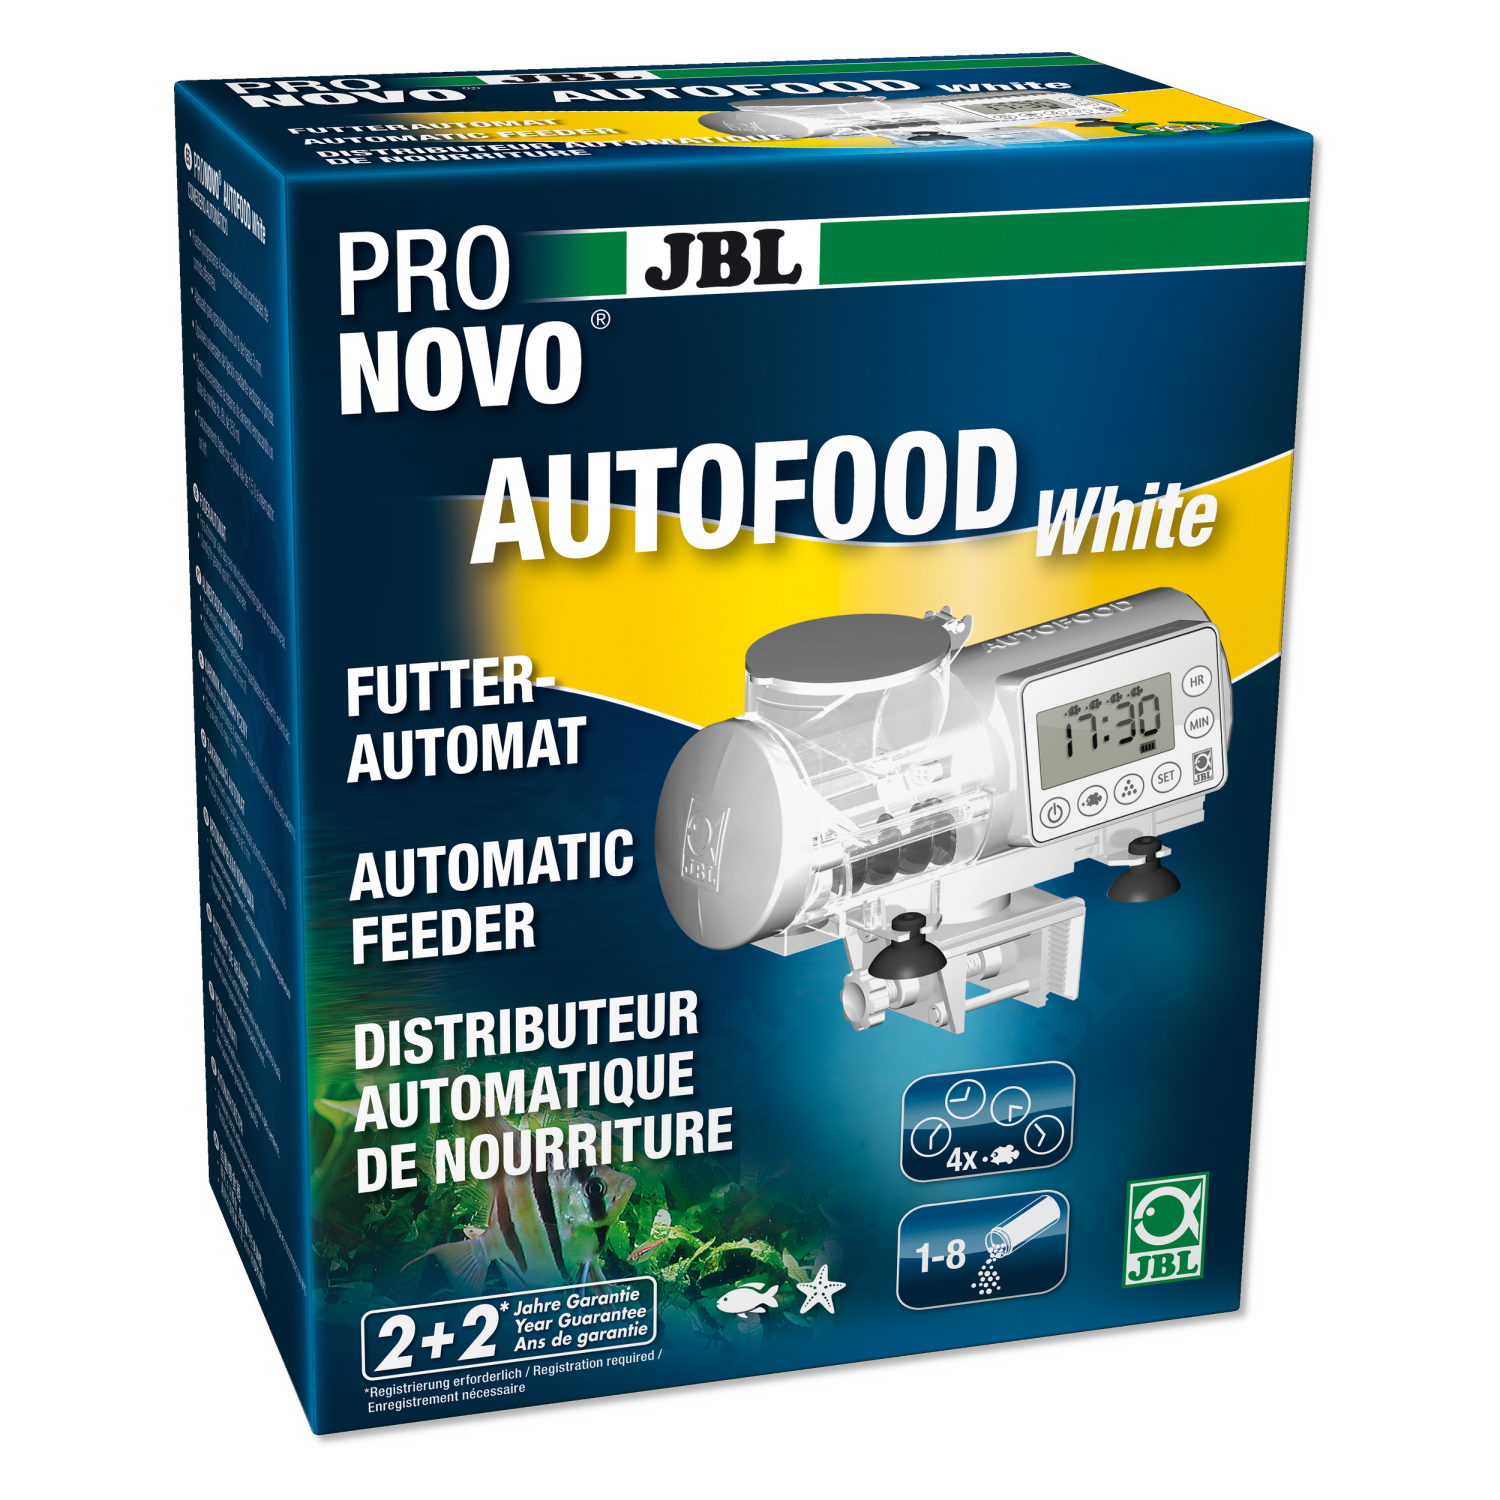 JBL Pronovo Autofood distributeur automatique de nourriture